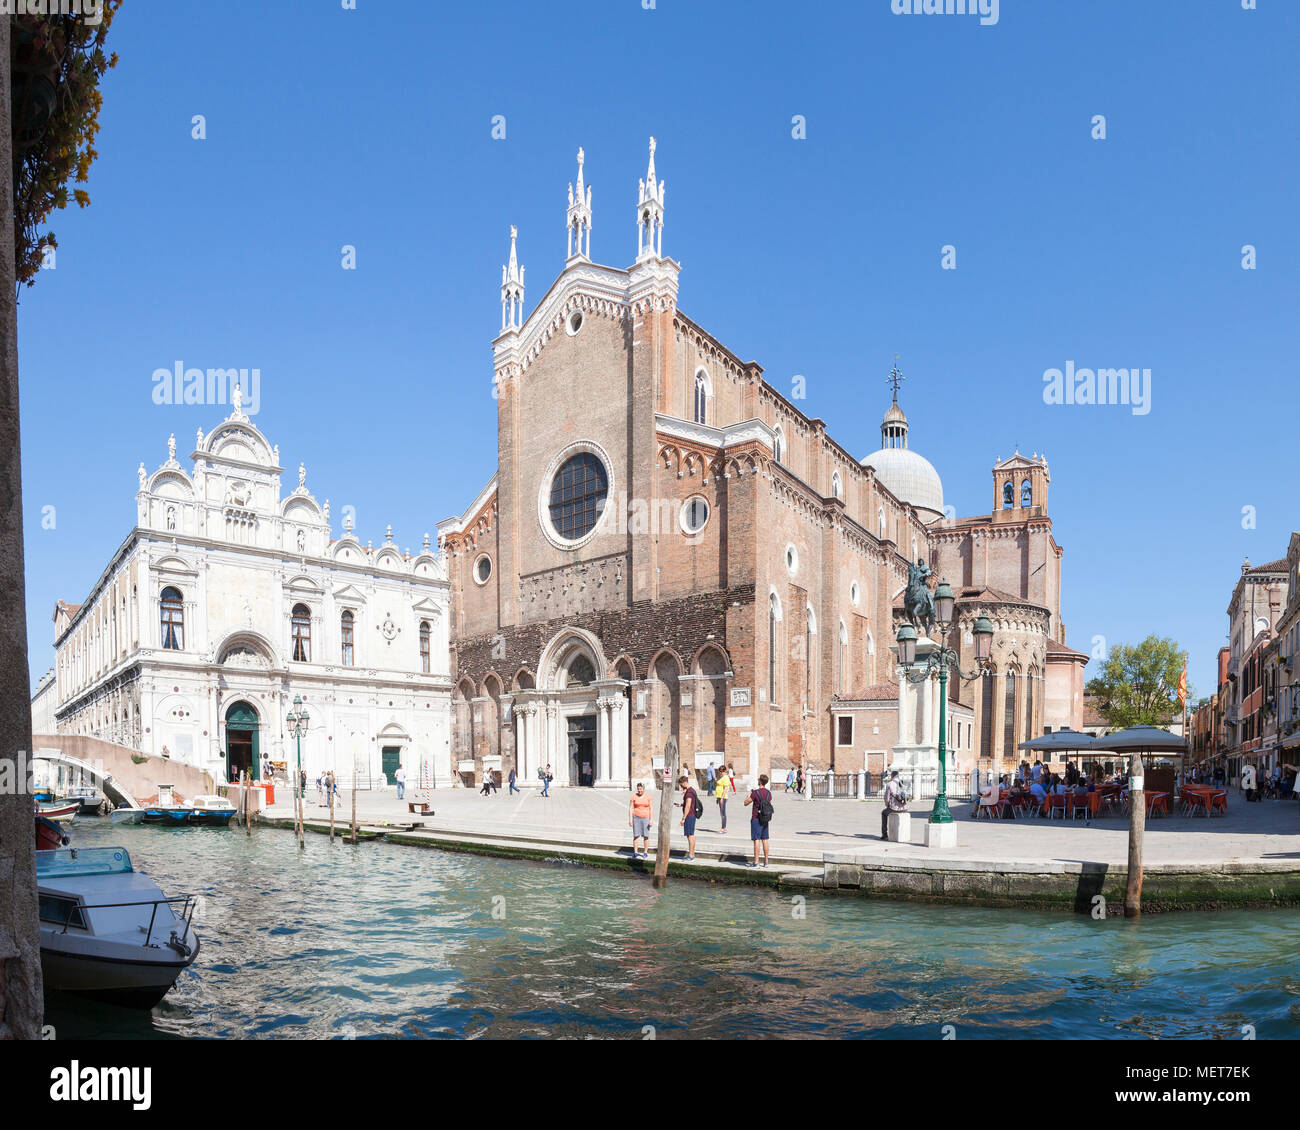 Basilica dei Santi Giovanni e Paolo, Campo Santi Giovanni e Paolo, Castello, Venice, Italy. Stitched panorama Stock Photo